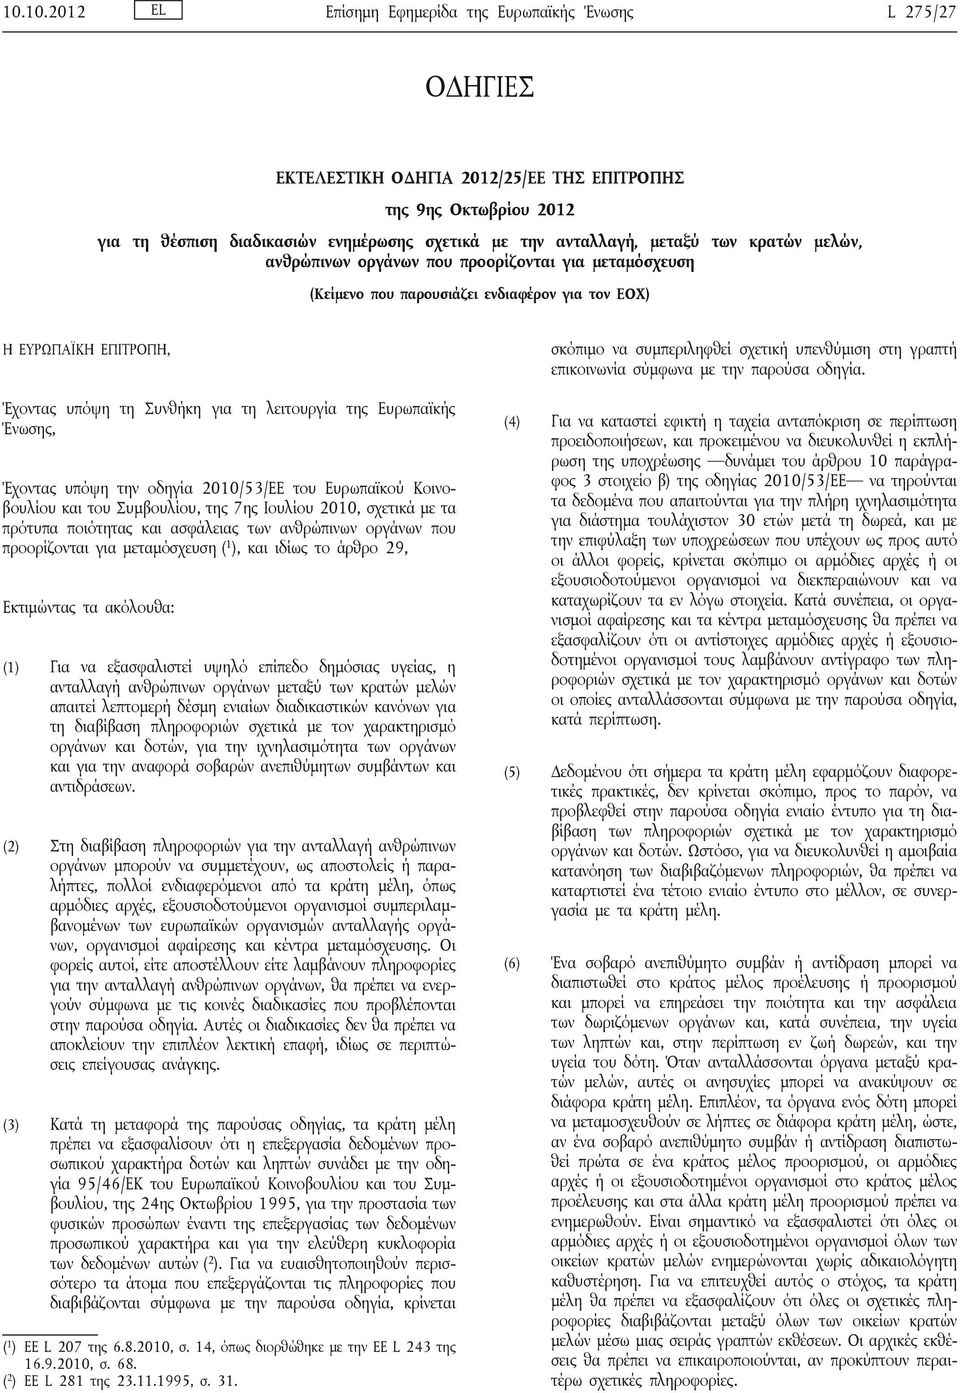 Ευρωπαϊκής Ένωσης, Έχοντας υπόψη την οδηγία 2010/53/ΕΕ του Ευρωπαϊκού Κοινοβουλίου και του Συμβουλίου, της 7ης Ιουλίου 2010, σχετικά με τα πρότυπα ποιότητας και ασφάλειας των ανθρώπινων οργάνων που